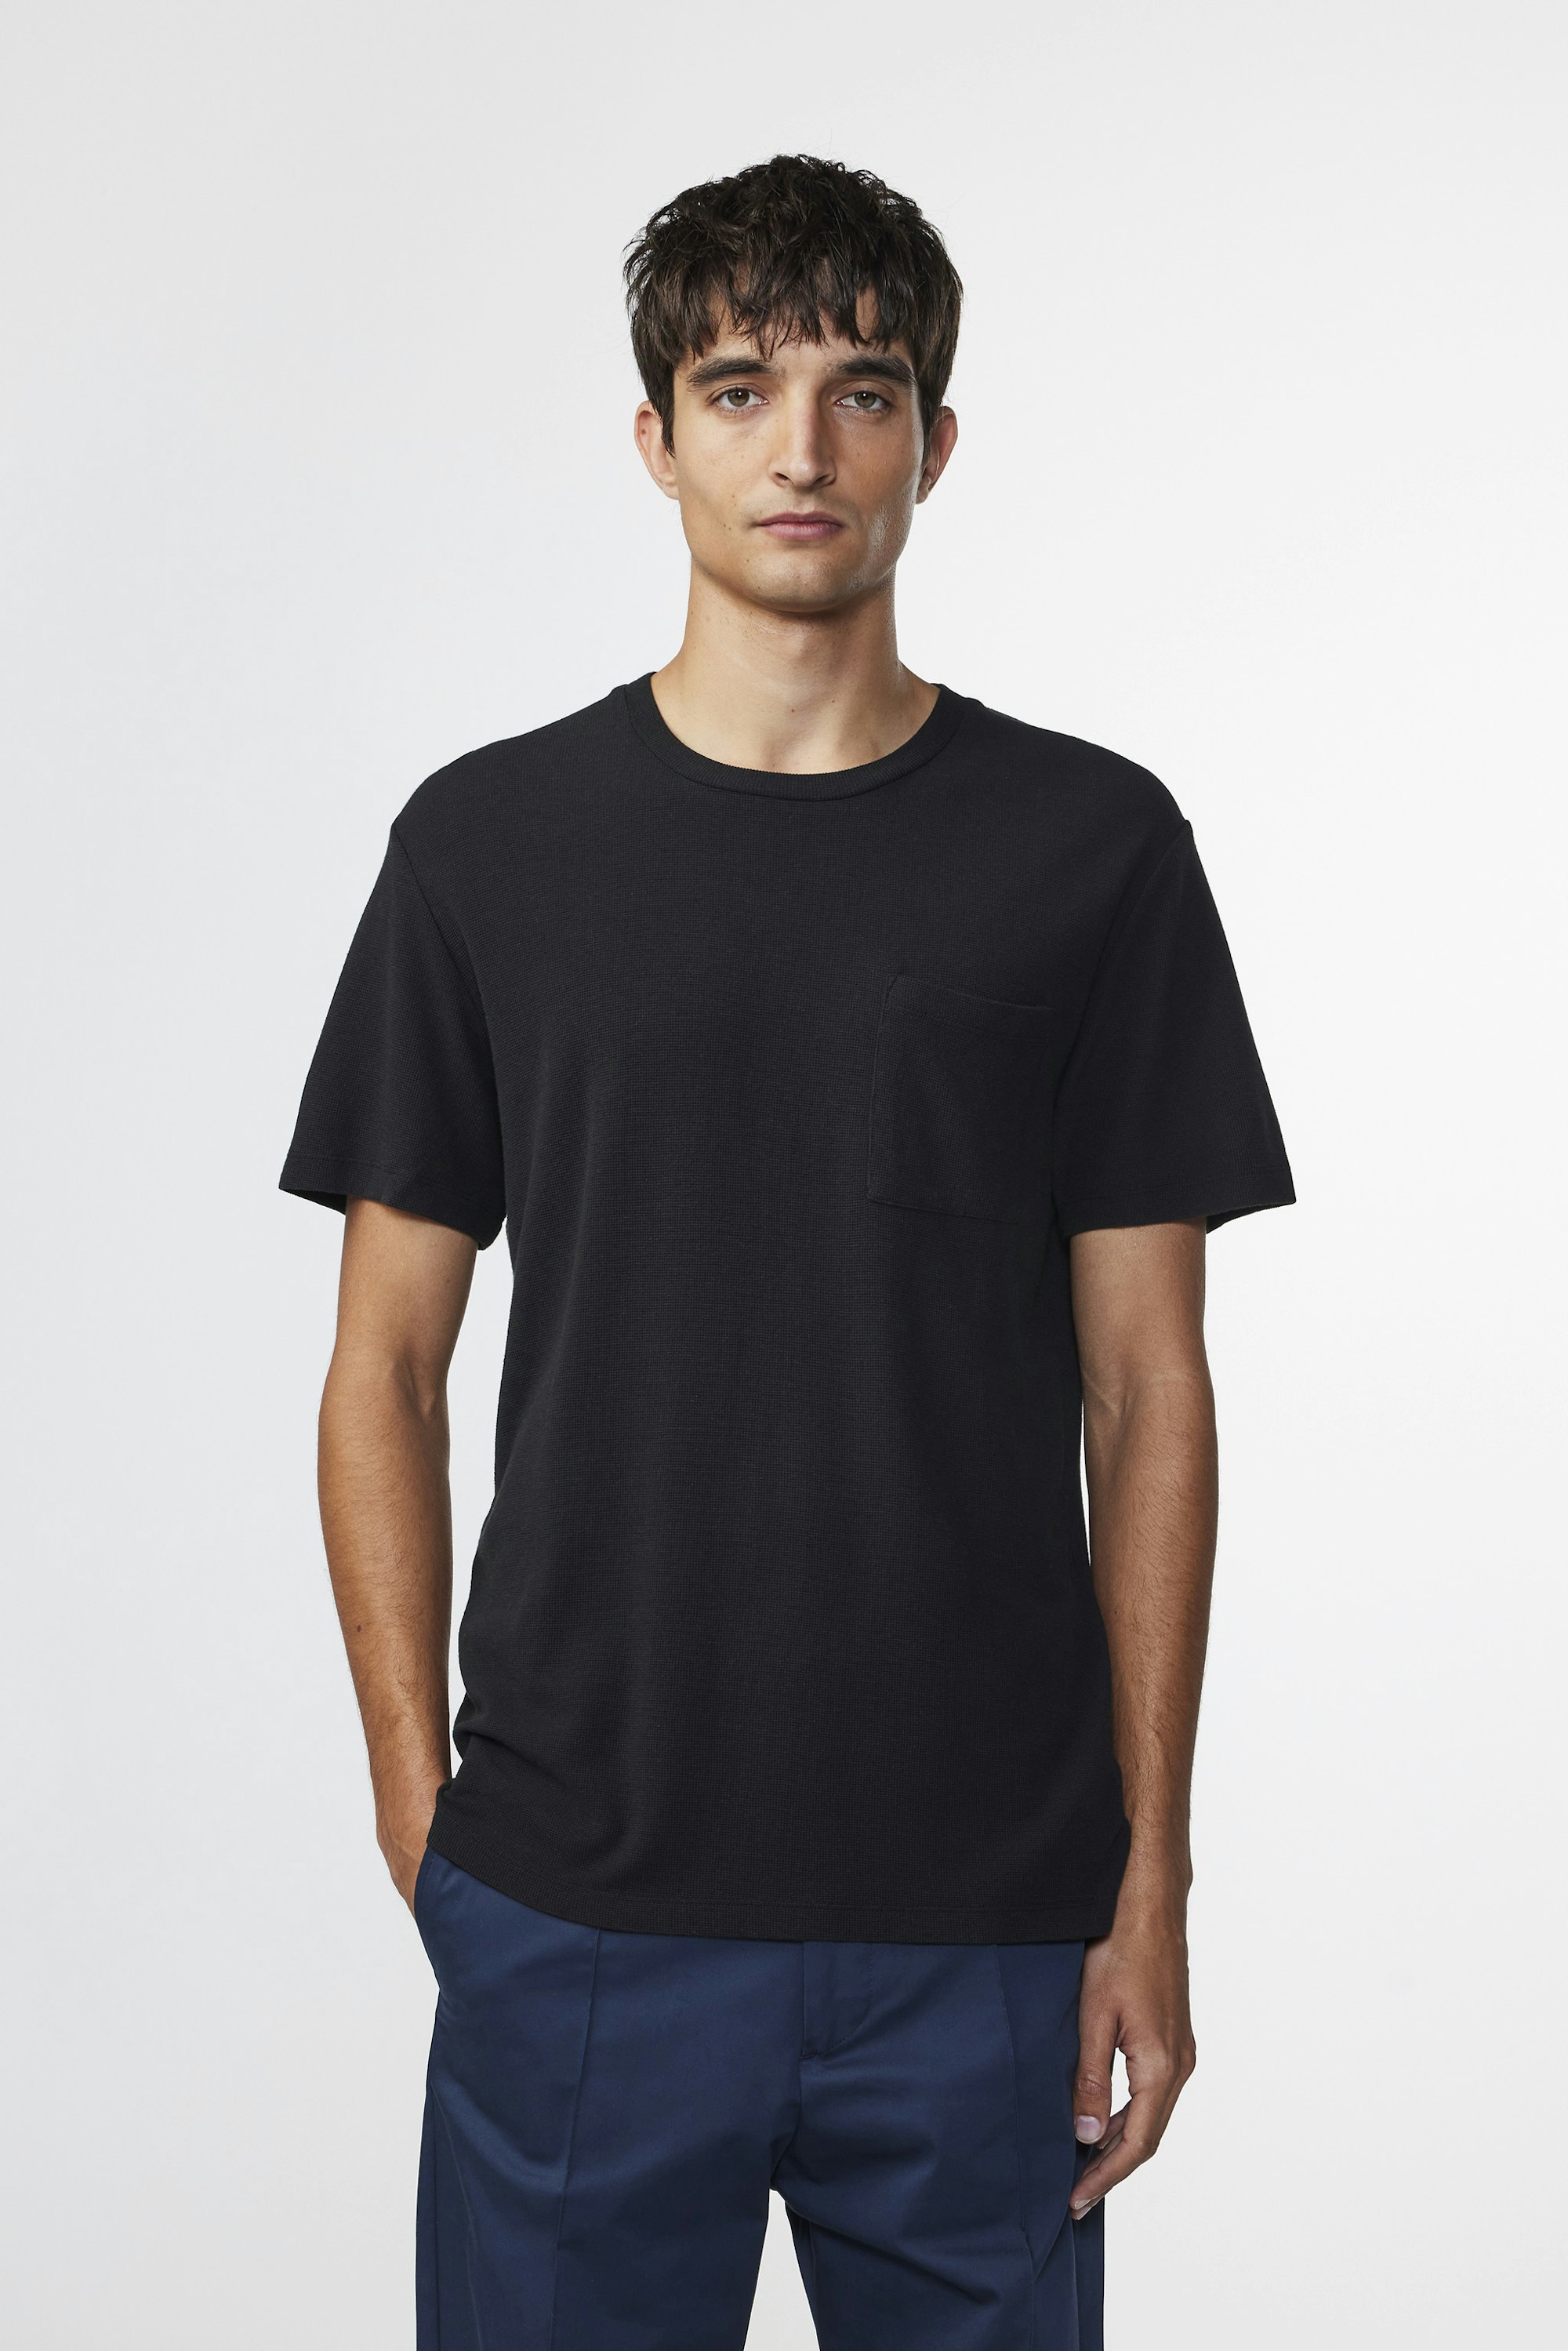 Clive 3323 men\'s t-shirt - Black - Buy online at